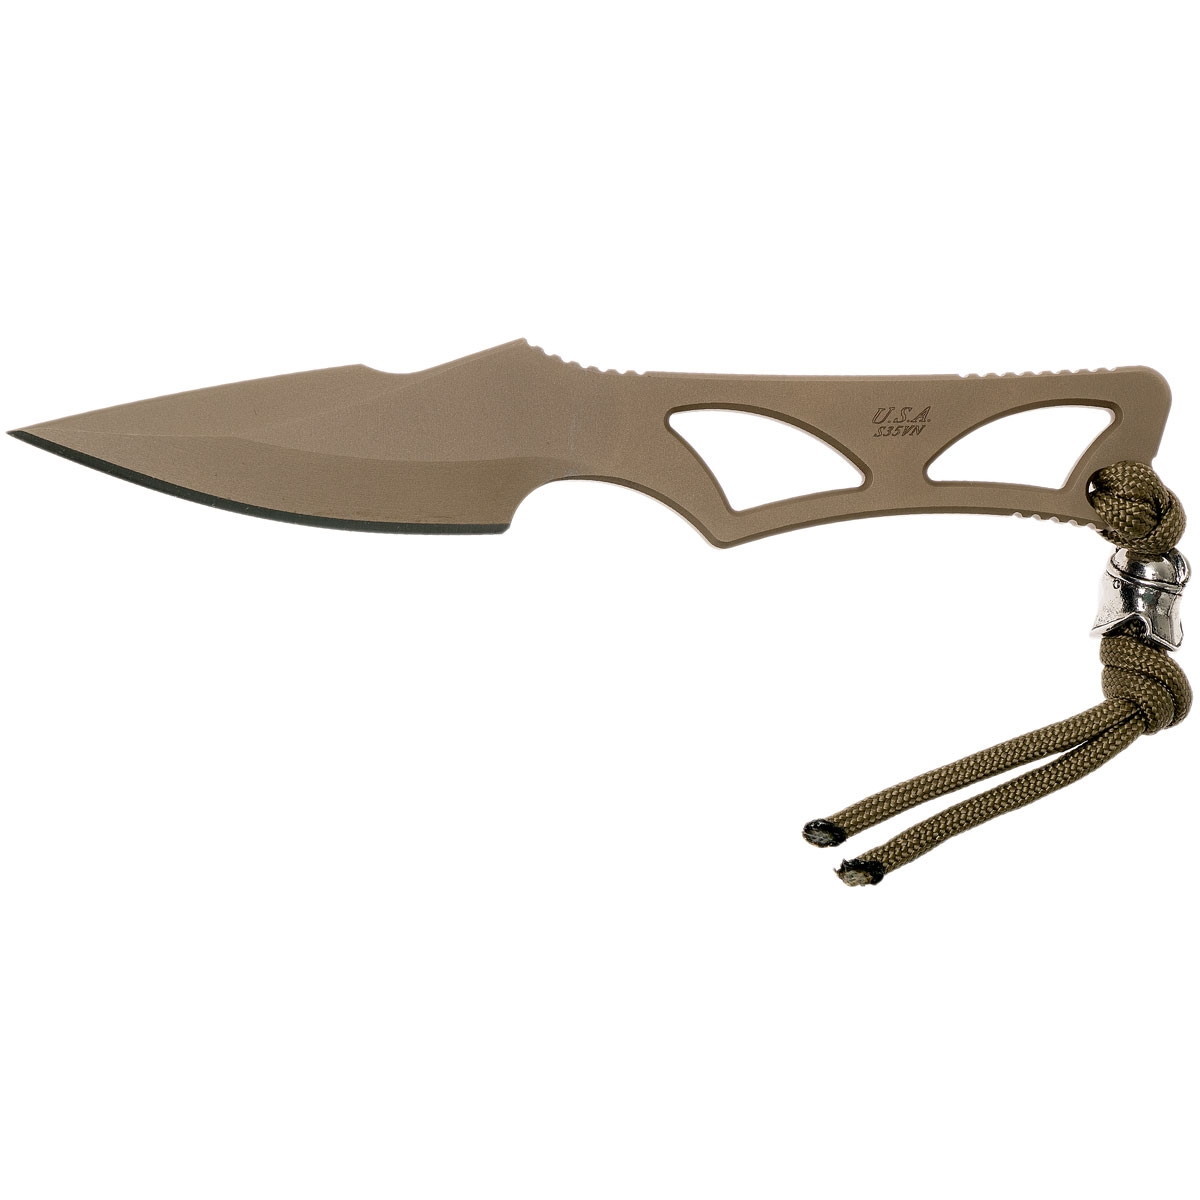 Шейный нож с фиксированным клинком Spartan Blades Enyo, сталь CPM-S35VN, цельнометаллический - фото 2